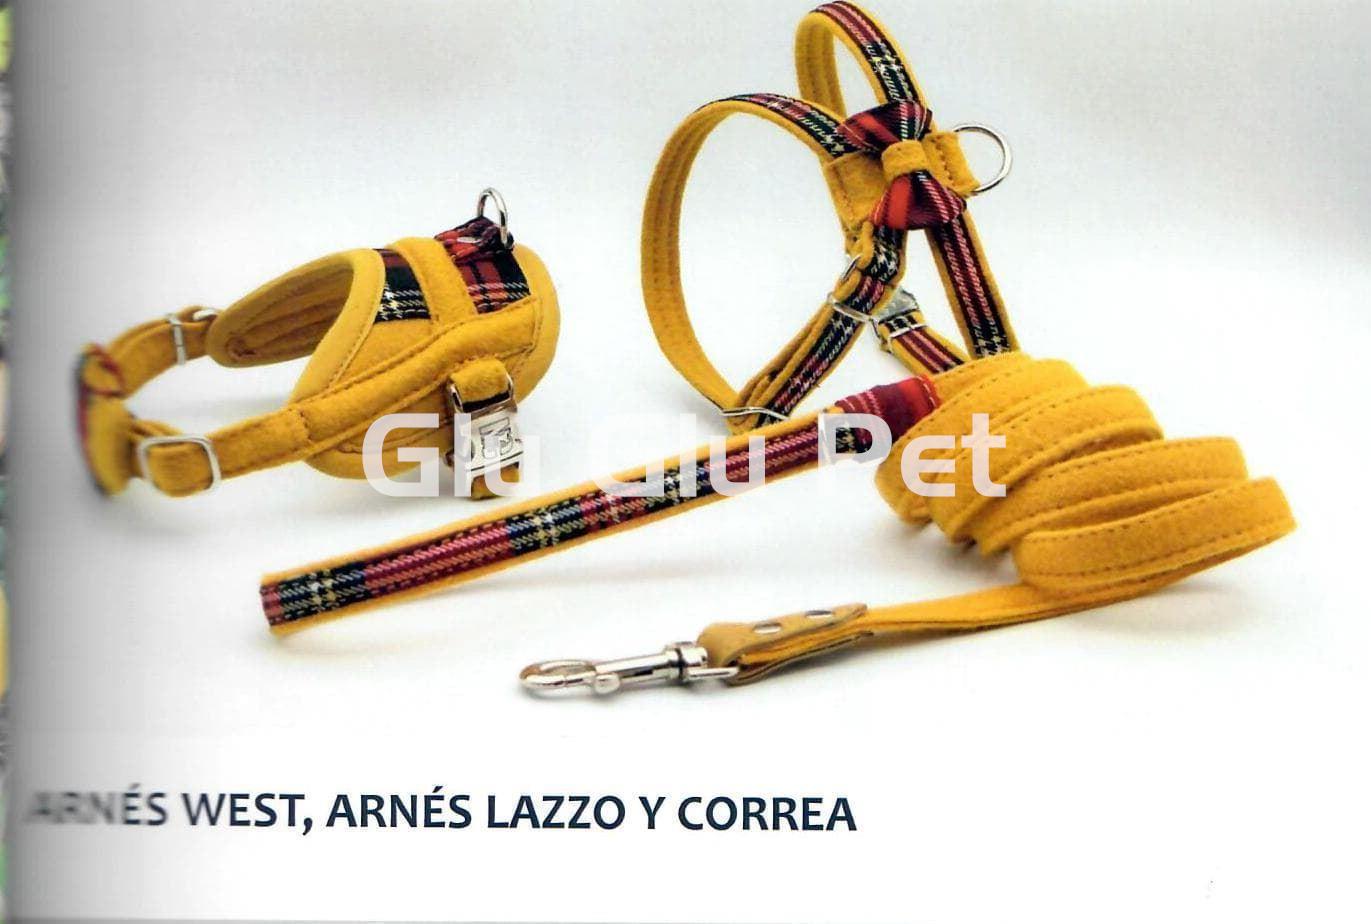 Arlin model strap - Image 1